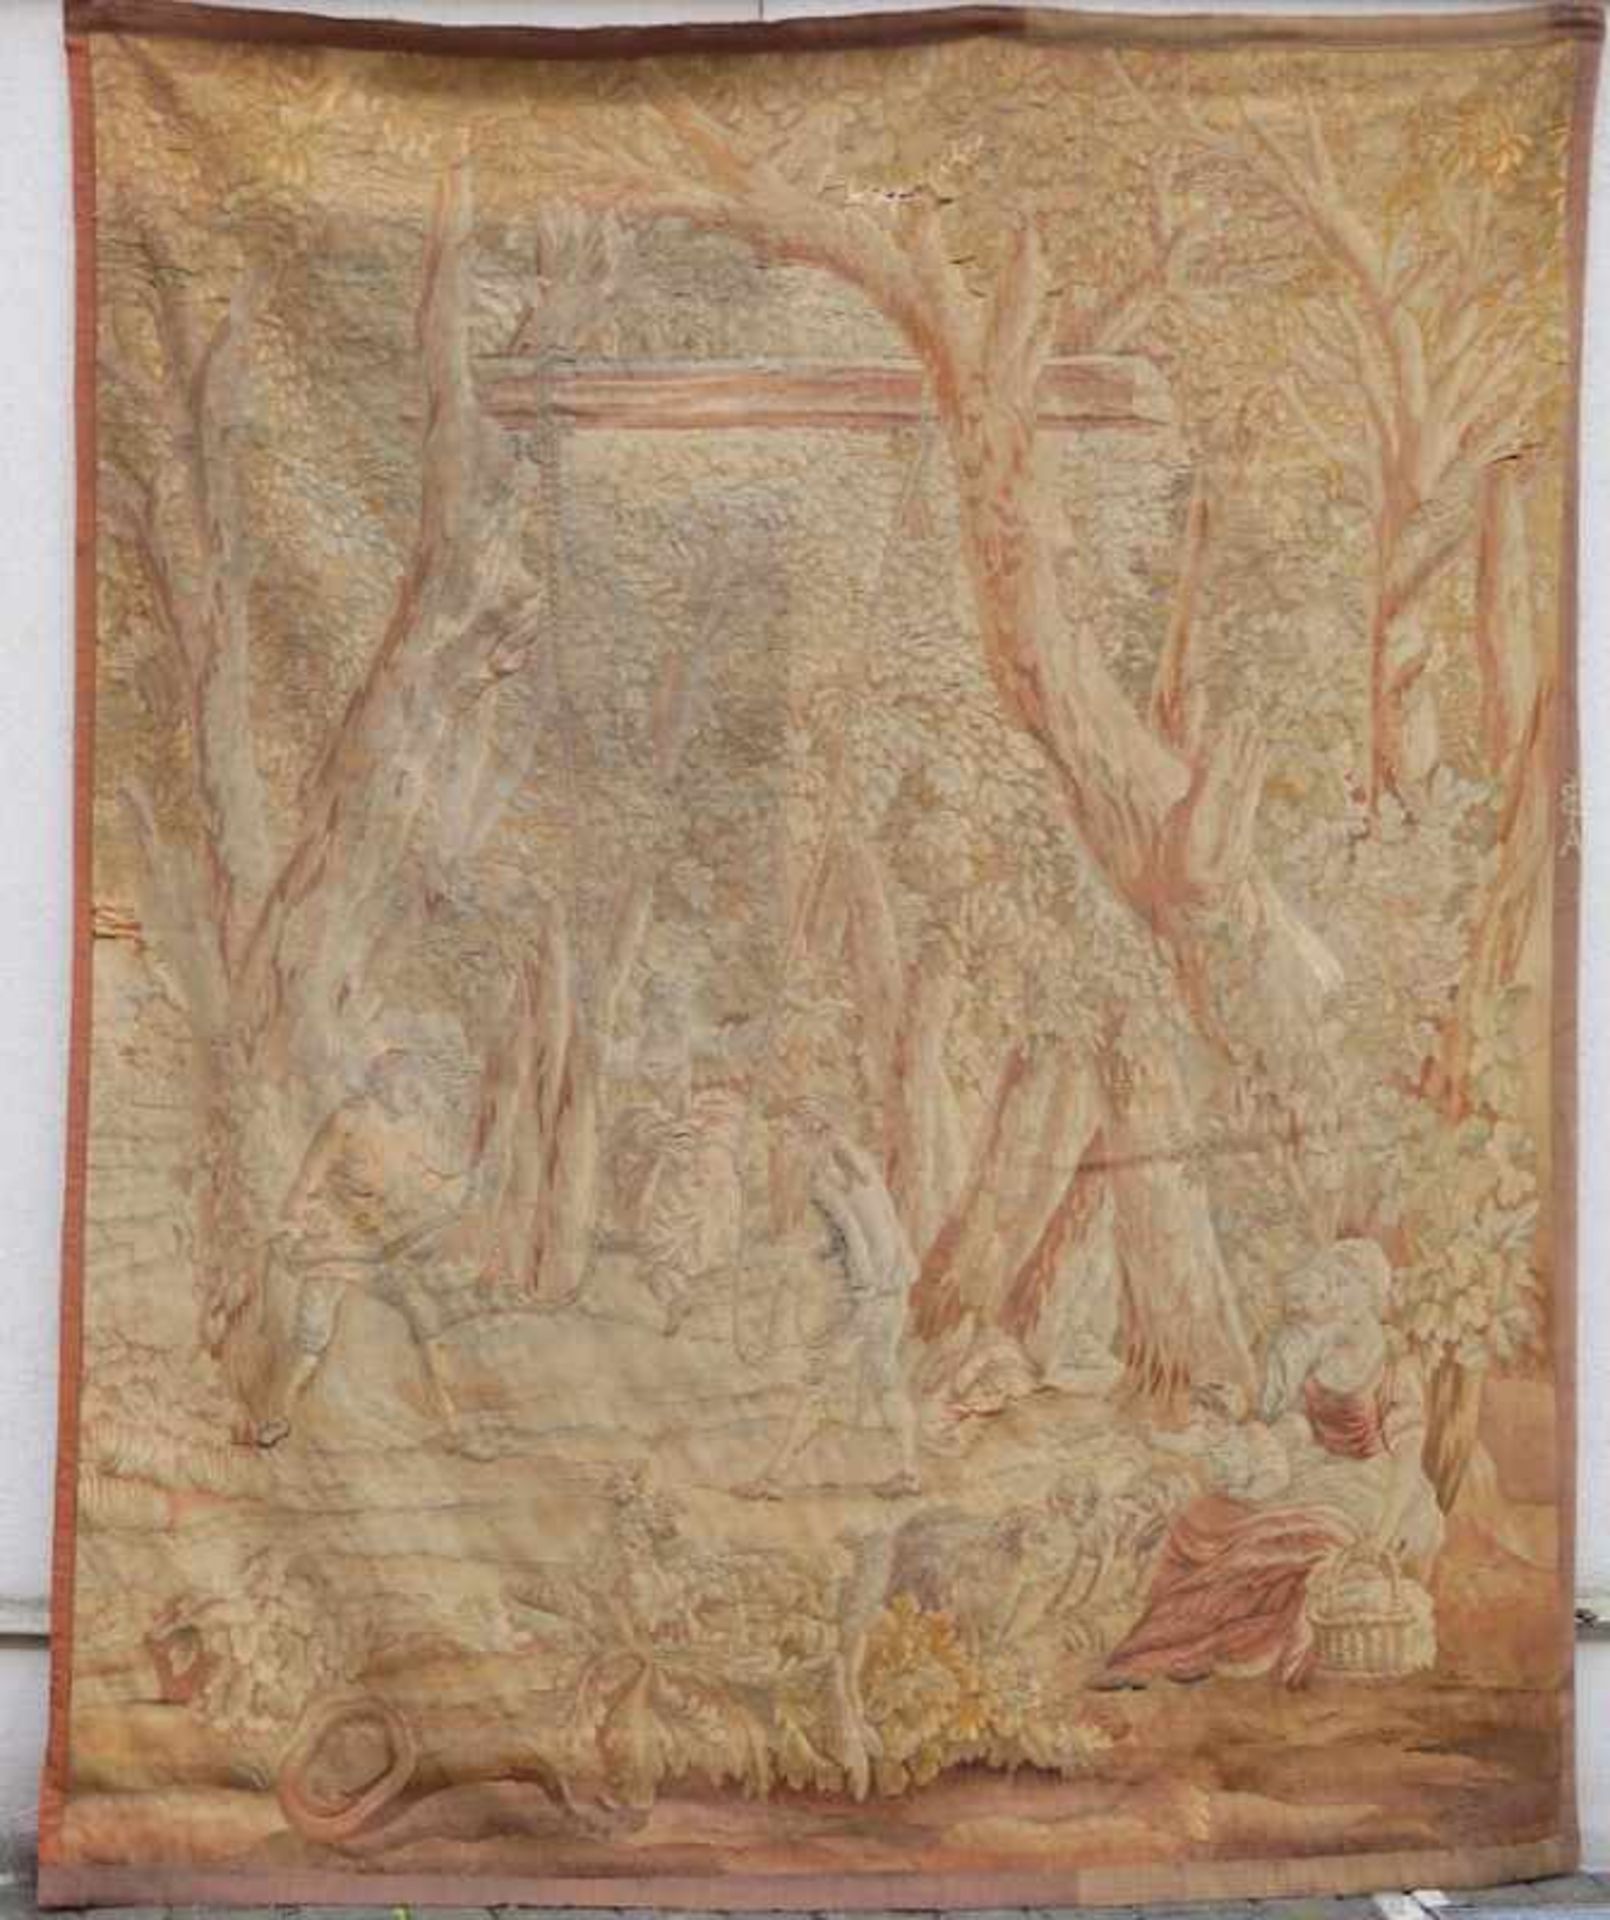 Gobelin, Aubusson, Ende 18. Jhd. Wolle mit Naturfarben, Darstellung einer Waldszene mit - Image 2 of 6